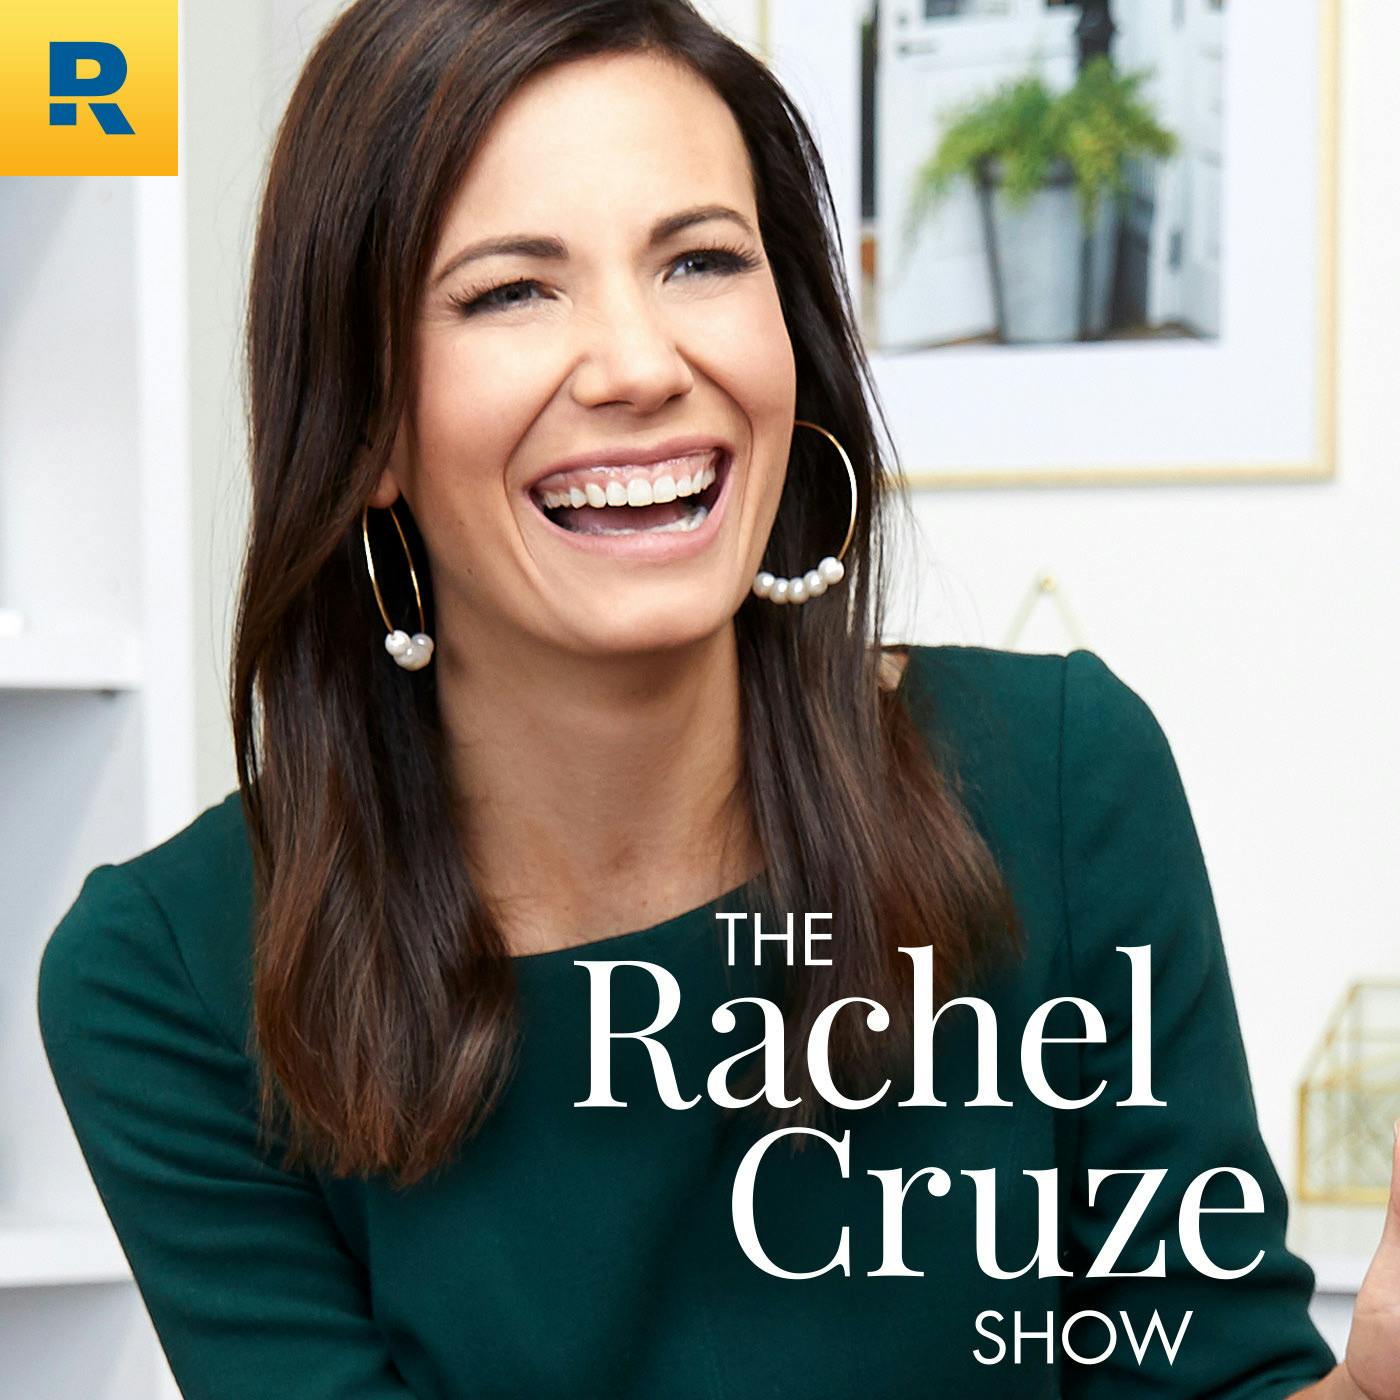 The Rachel Cruze Show:Ramsey Network